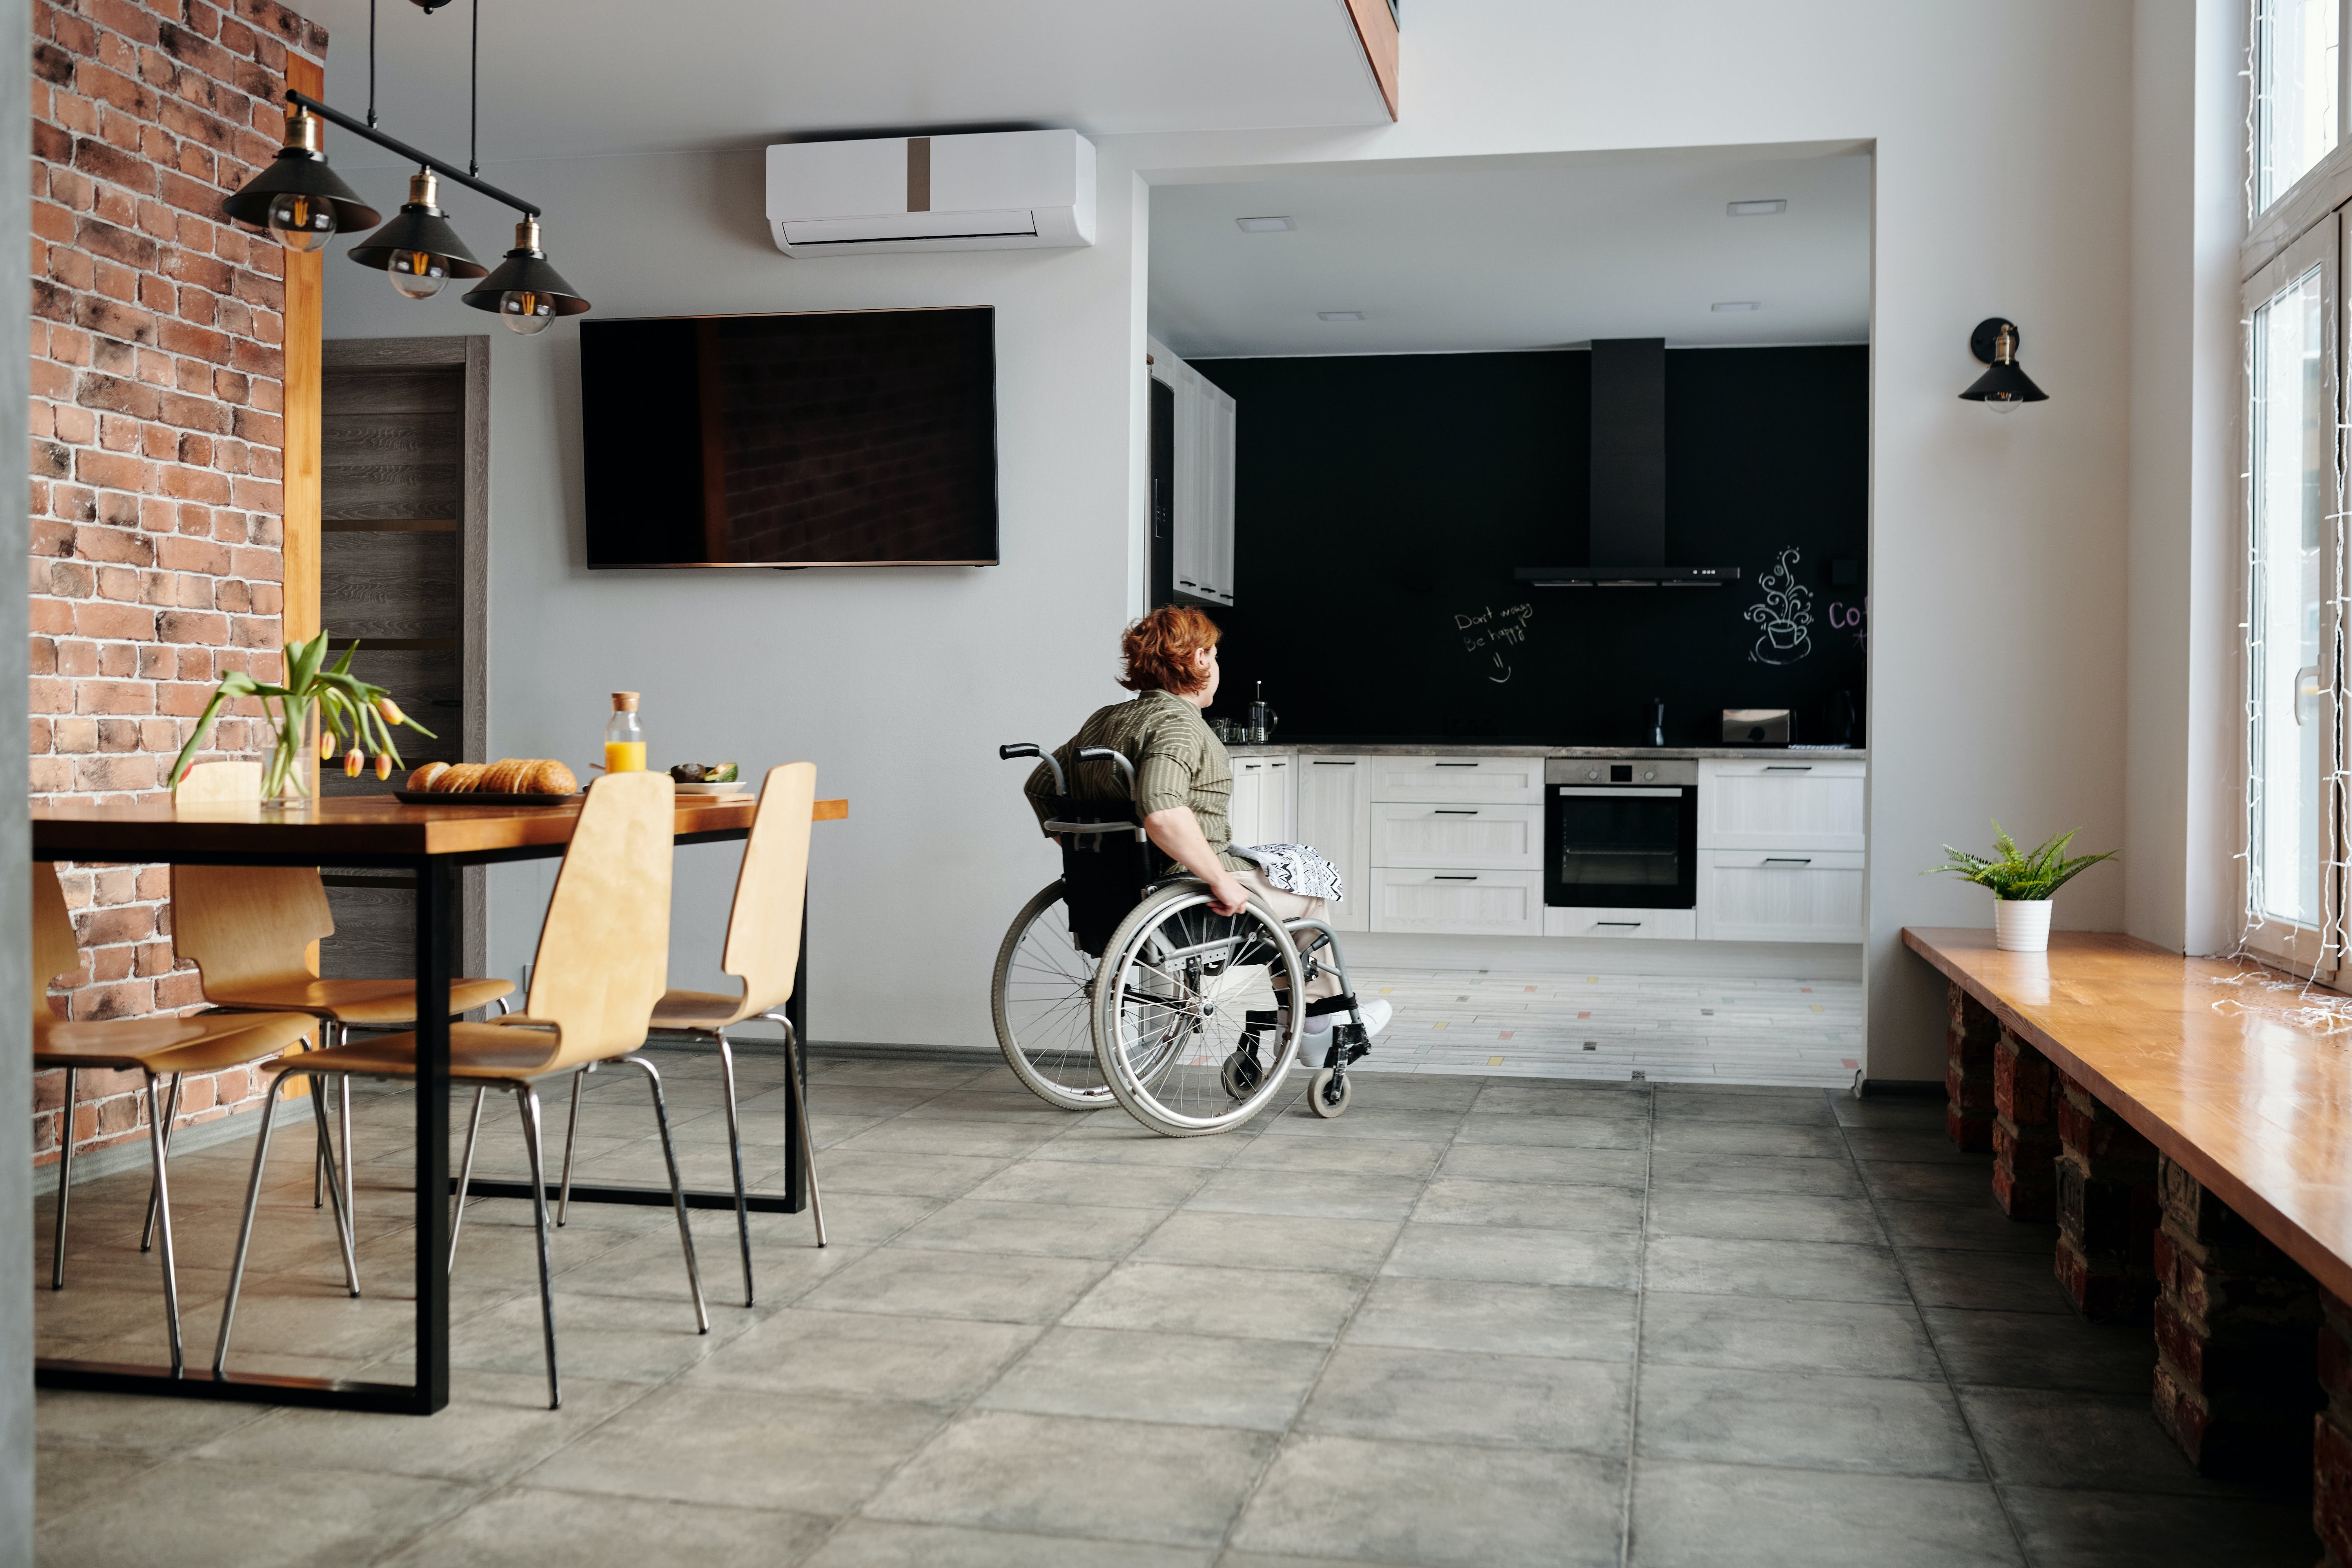 Приватизируемая квартира инвалид. Квартира для инвалида. Кухня для колясочника. Квартира для инвалида колясочника. Кухня для инвалида колясочника.